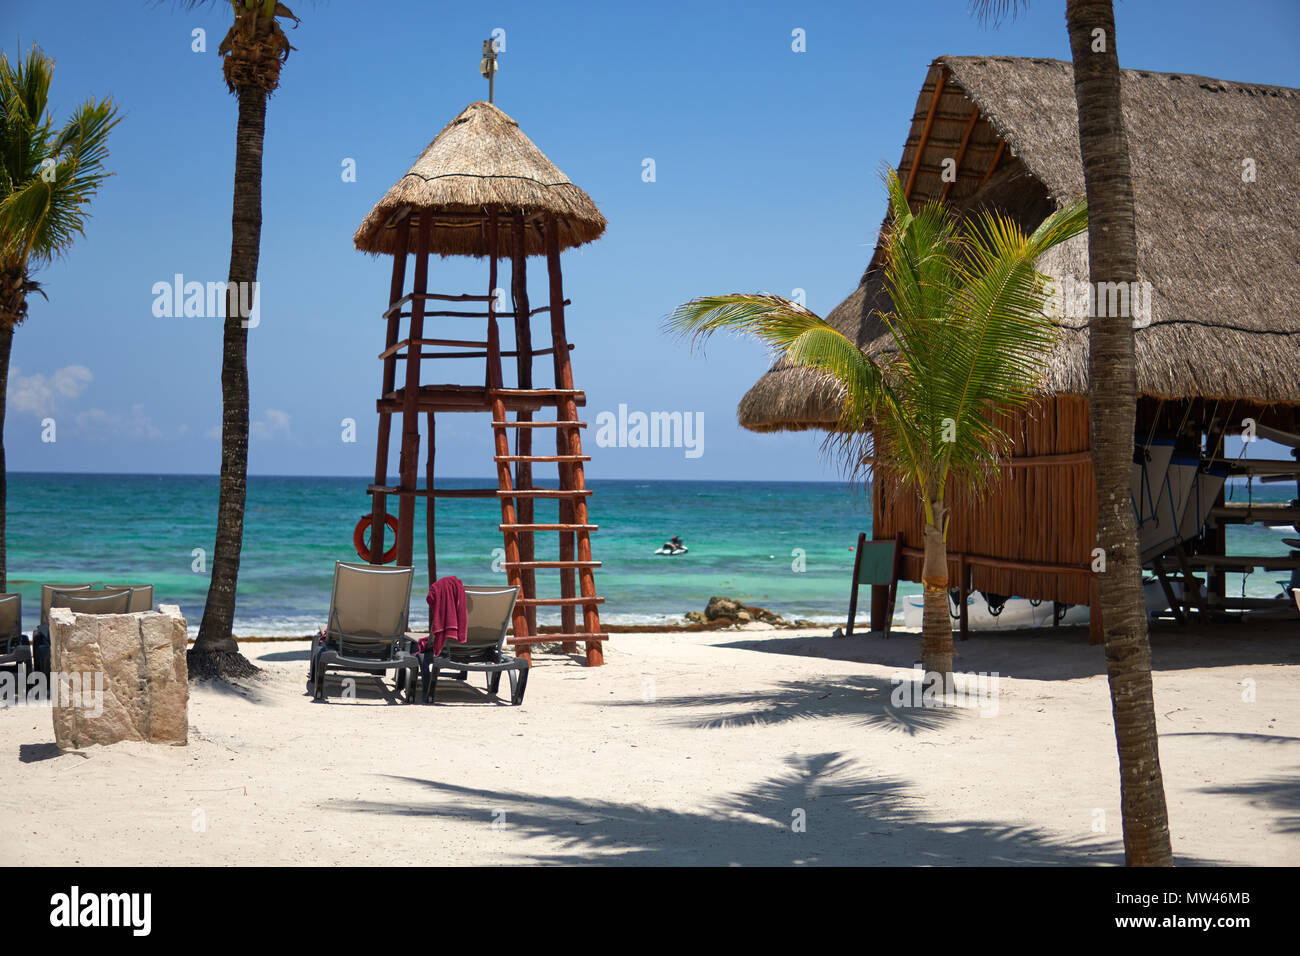 Vista resort hotel di lusso di spiaggia di Costa Tropicale. Luogo di bagnino. Foglie di palme da cocco che fluttua nel vento contro il cielo blu. Acque turchesi del Mar dei Caraibi. Riviera Maya Messico Foto Stock